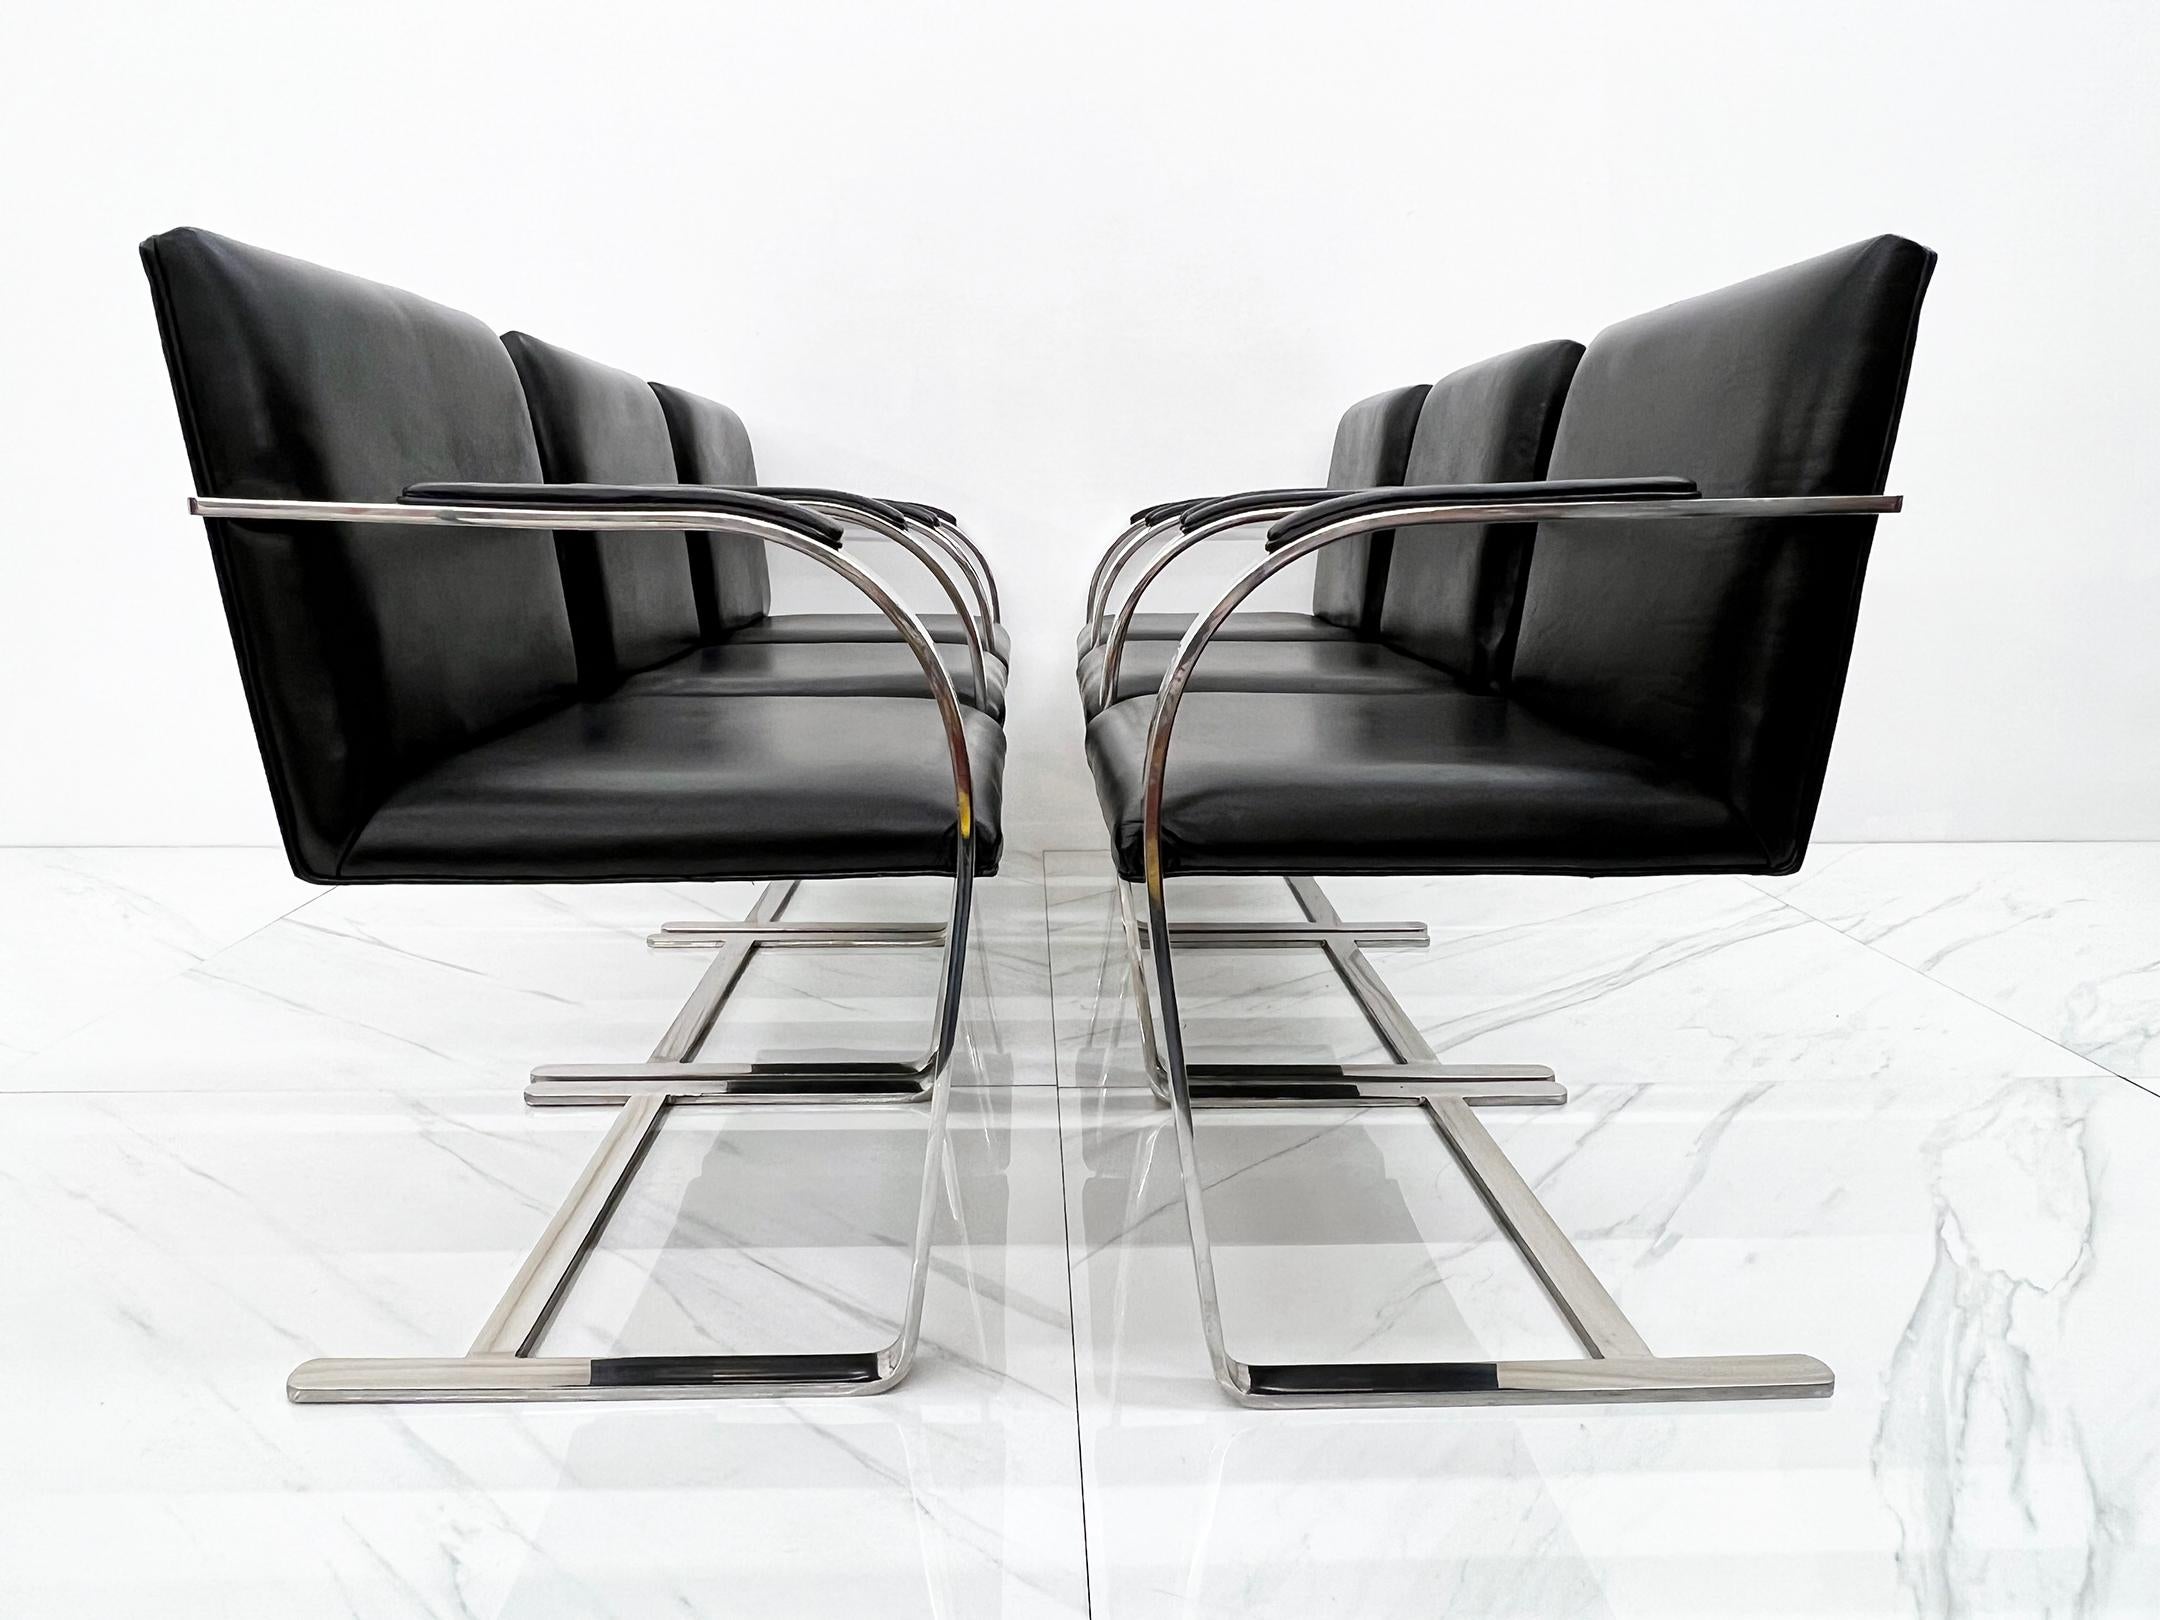 Zeitlos und klassisch. Diese 1930 von Ludwig Mies van der Rohe entworfenen Stühle sind wie George Clooney - sie sehen mit zunehmendem Alter einfach besser aus und kommen scheinbar nie aus der Mode.

Dieses spezielle Set aus den 1980er Jahren ist